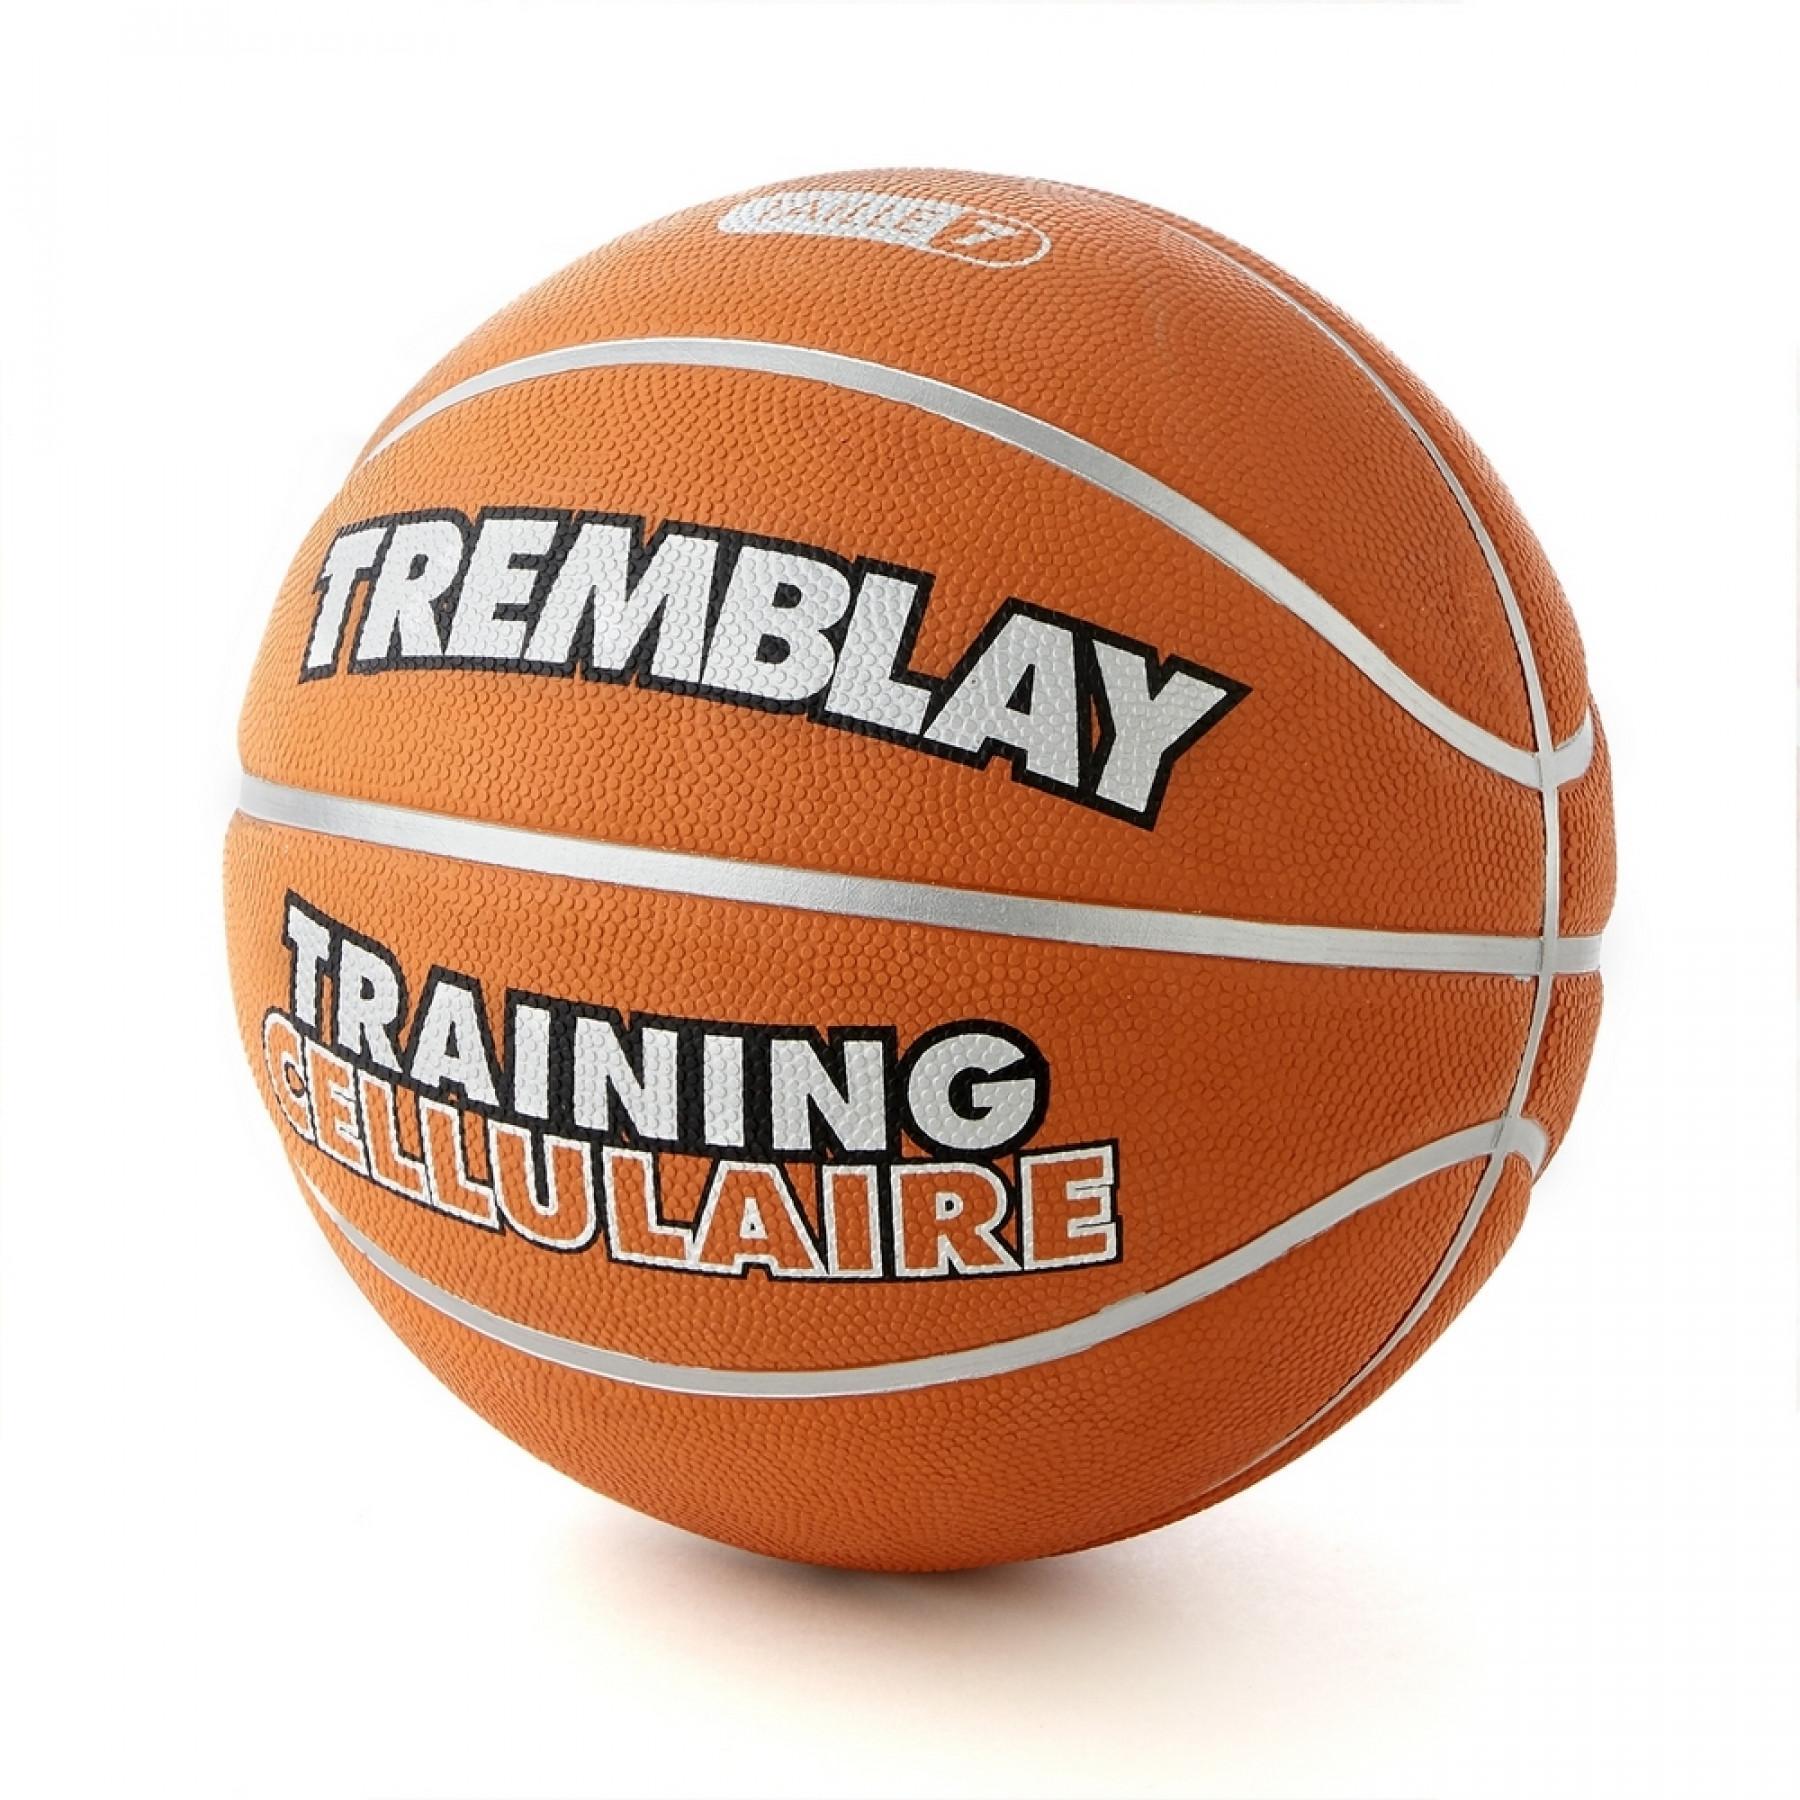 Pallone da allenamento cellulare Tremblay